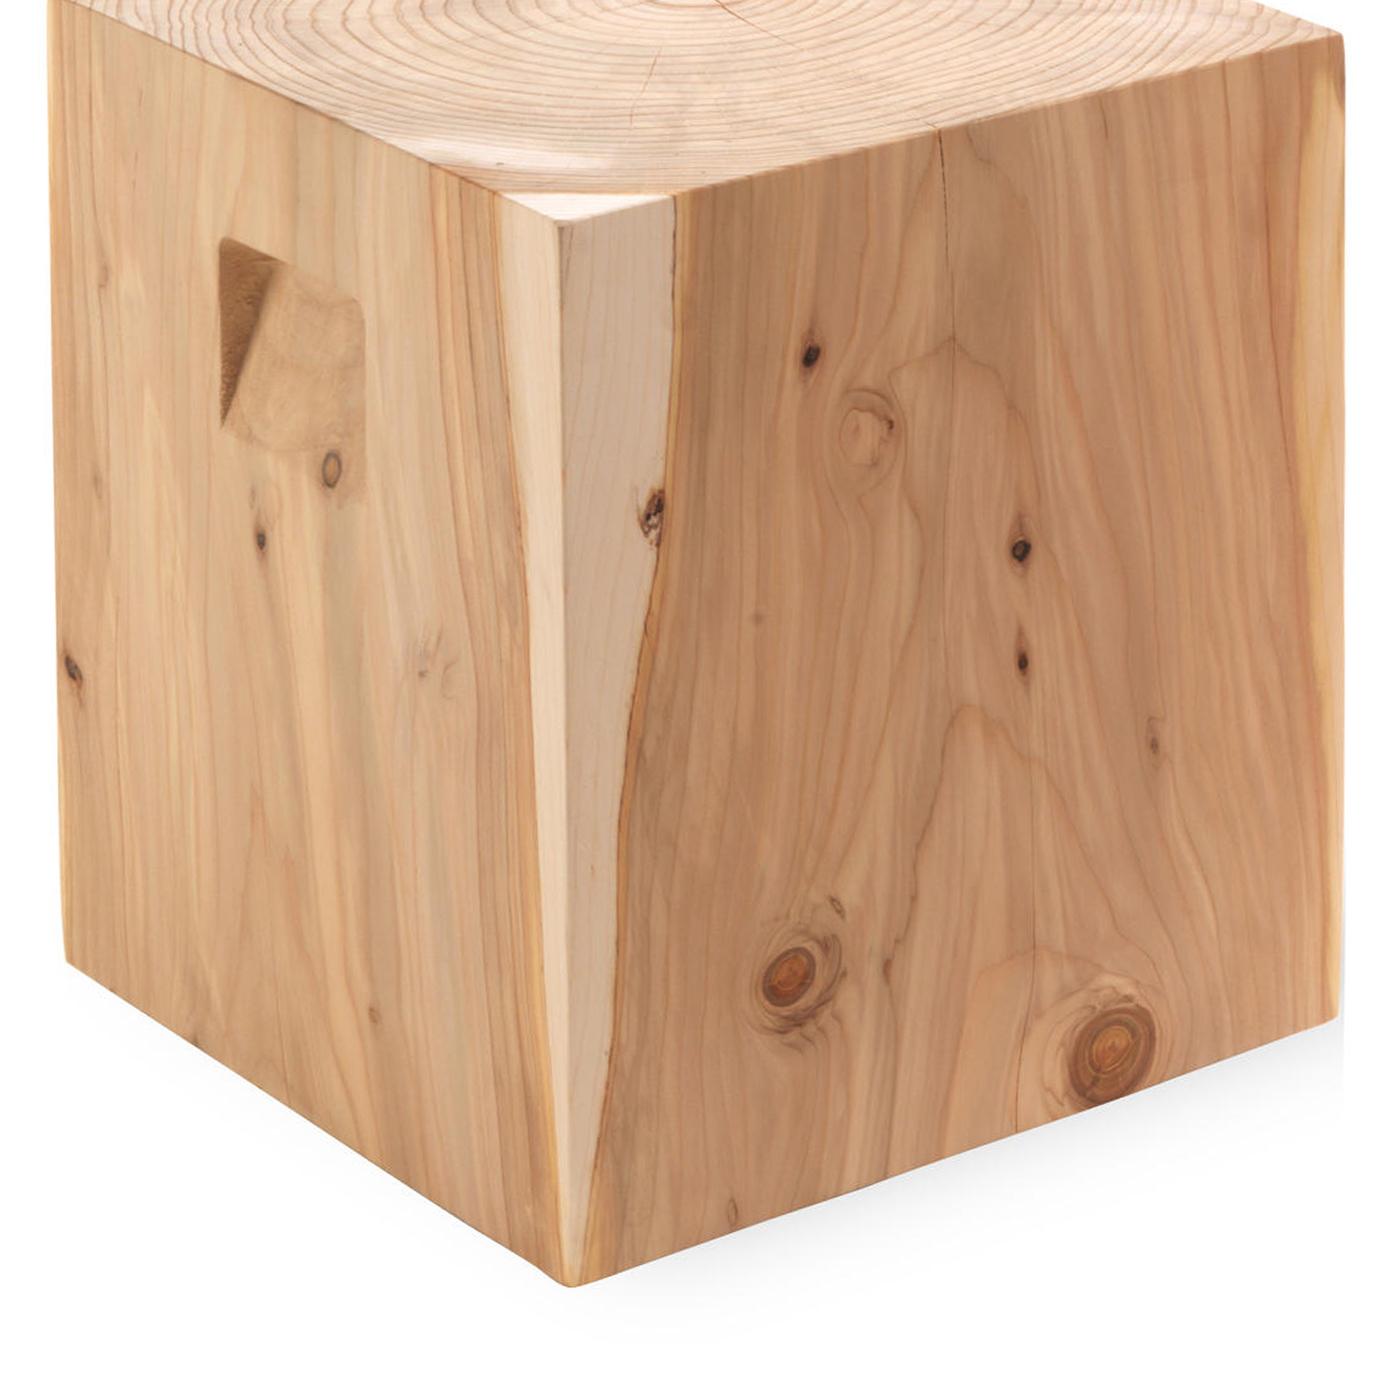 Italian Cube Cedar Stool